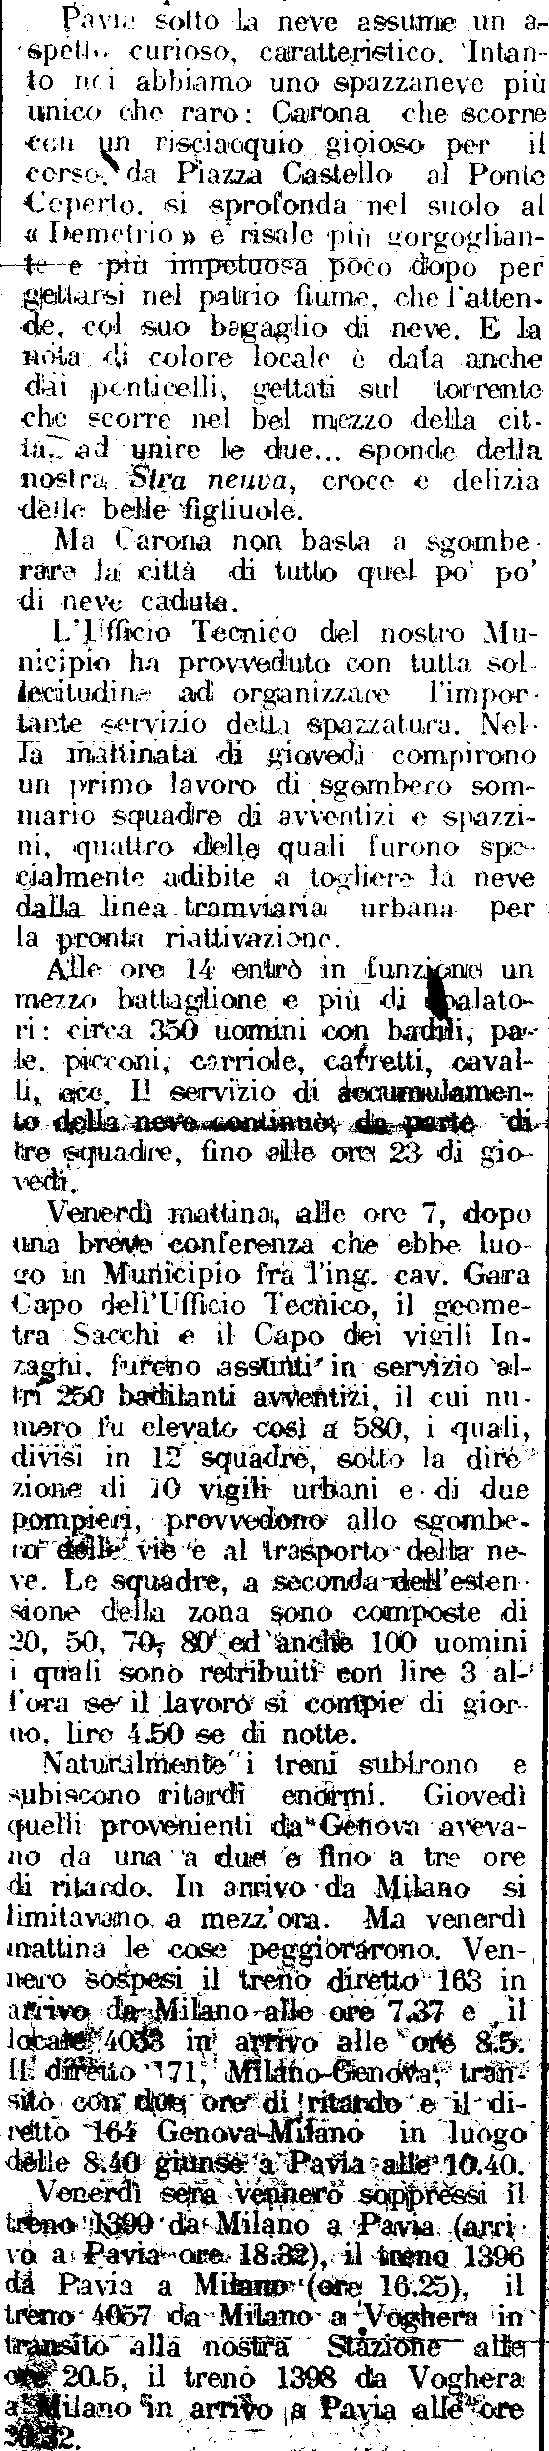 L'articolo de "La Provincia Pavese" del 17 Gennaio 1926